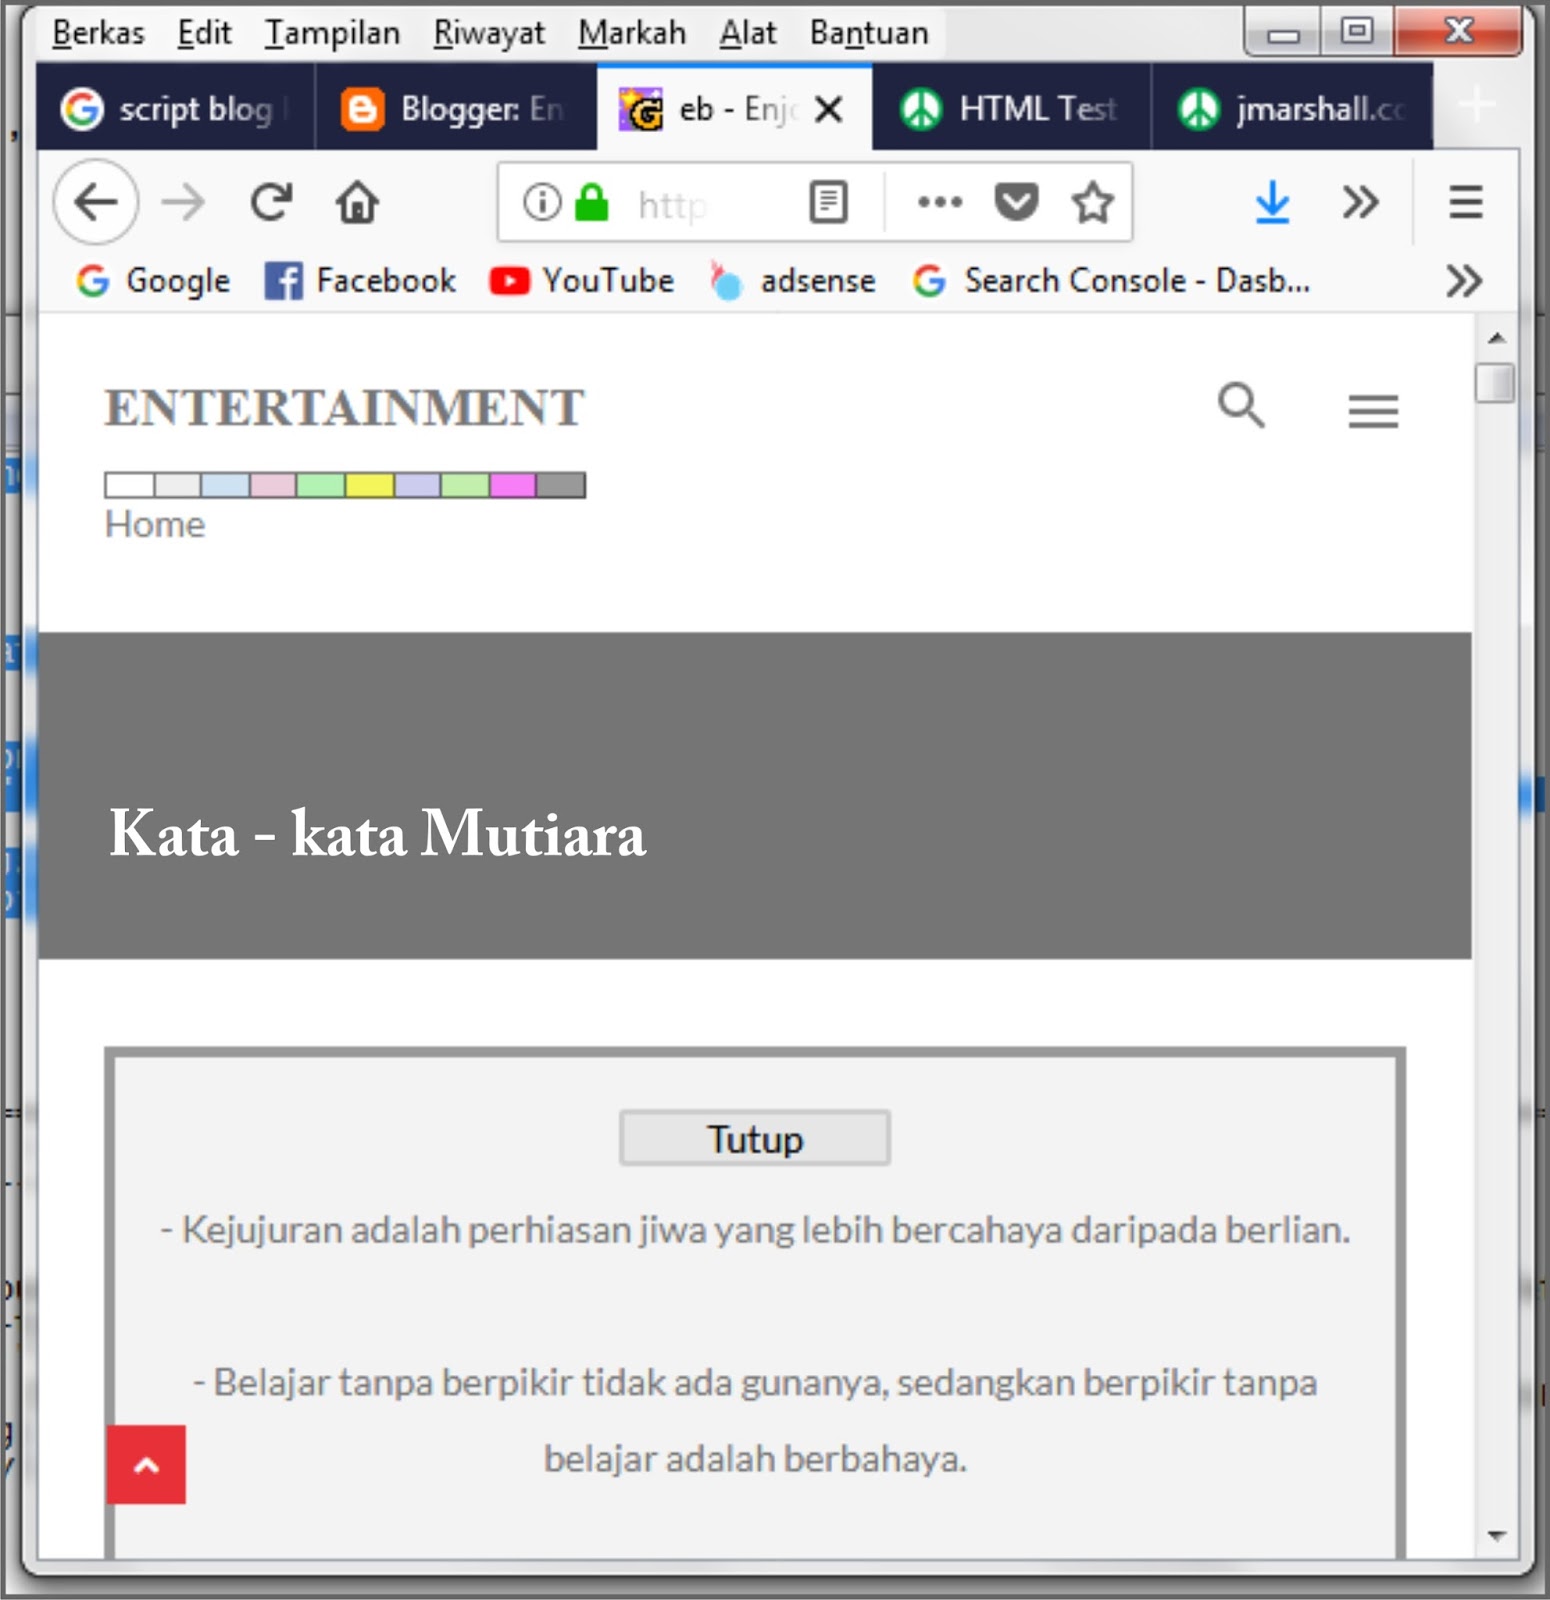 Kata Kata Gokil Entertainment